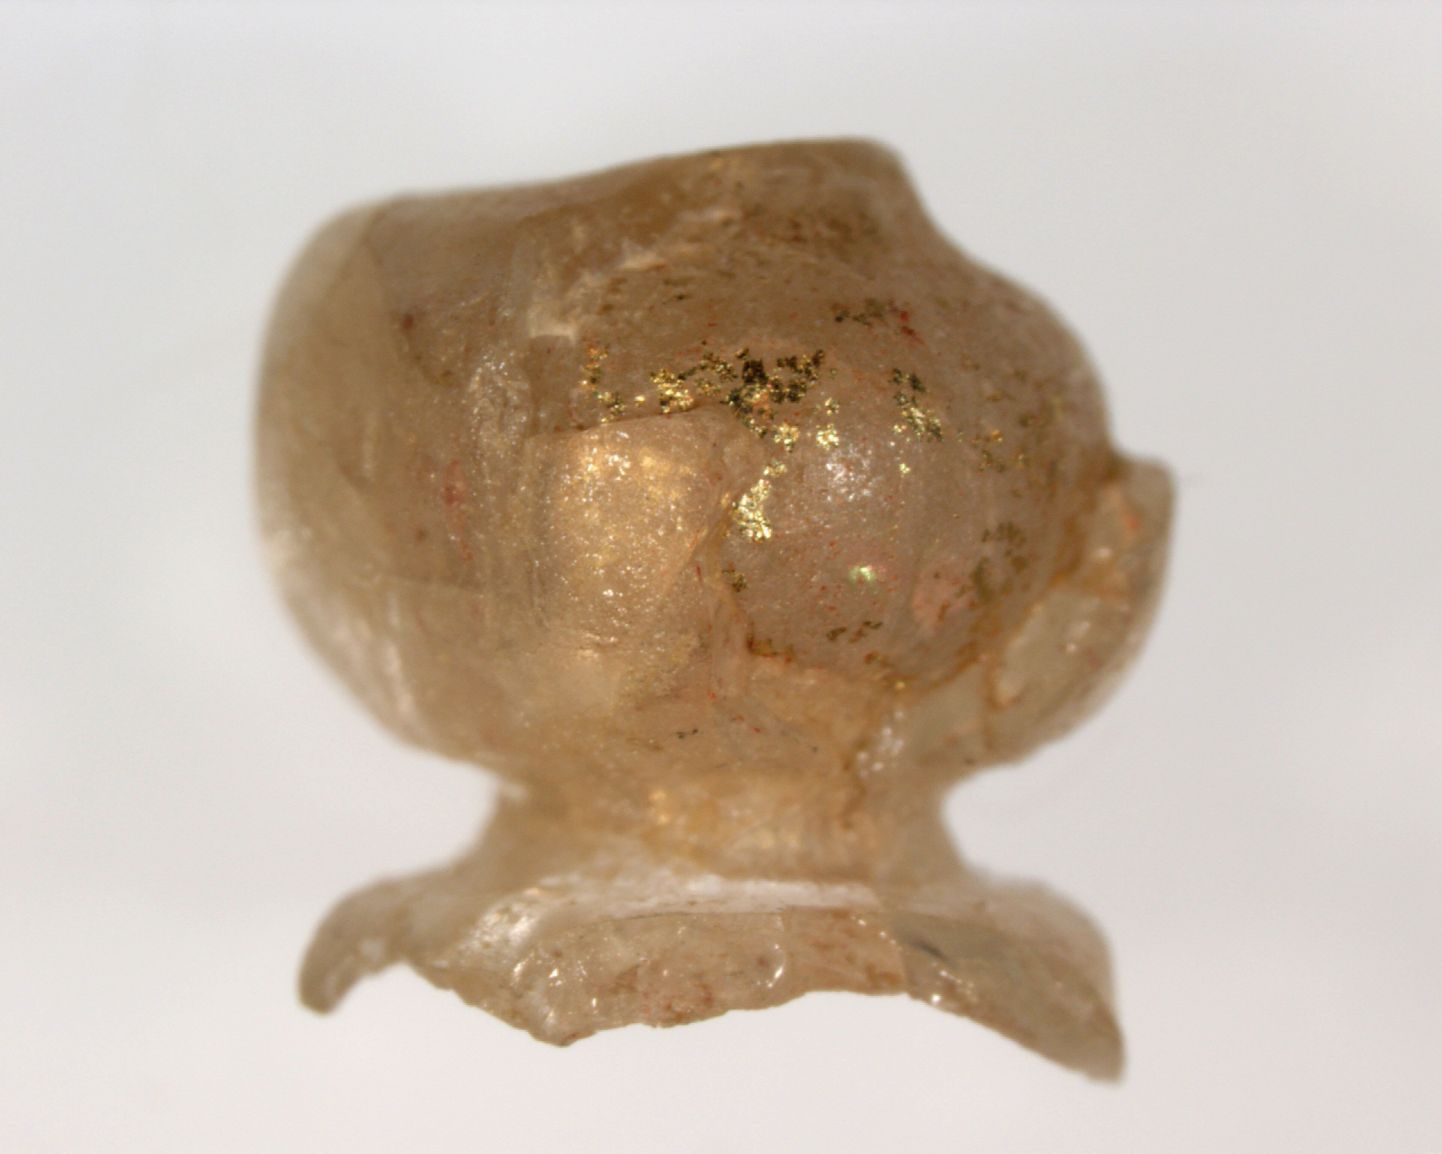 Iidsest Jaapani hauast leiti Vana-Rooma päritolu klaashelmeid